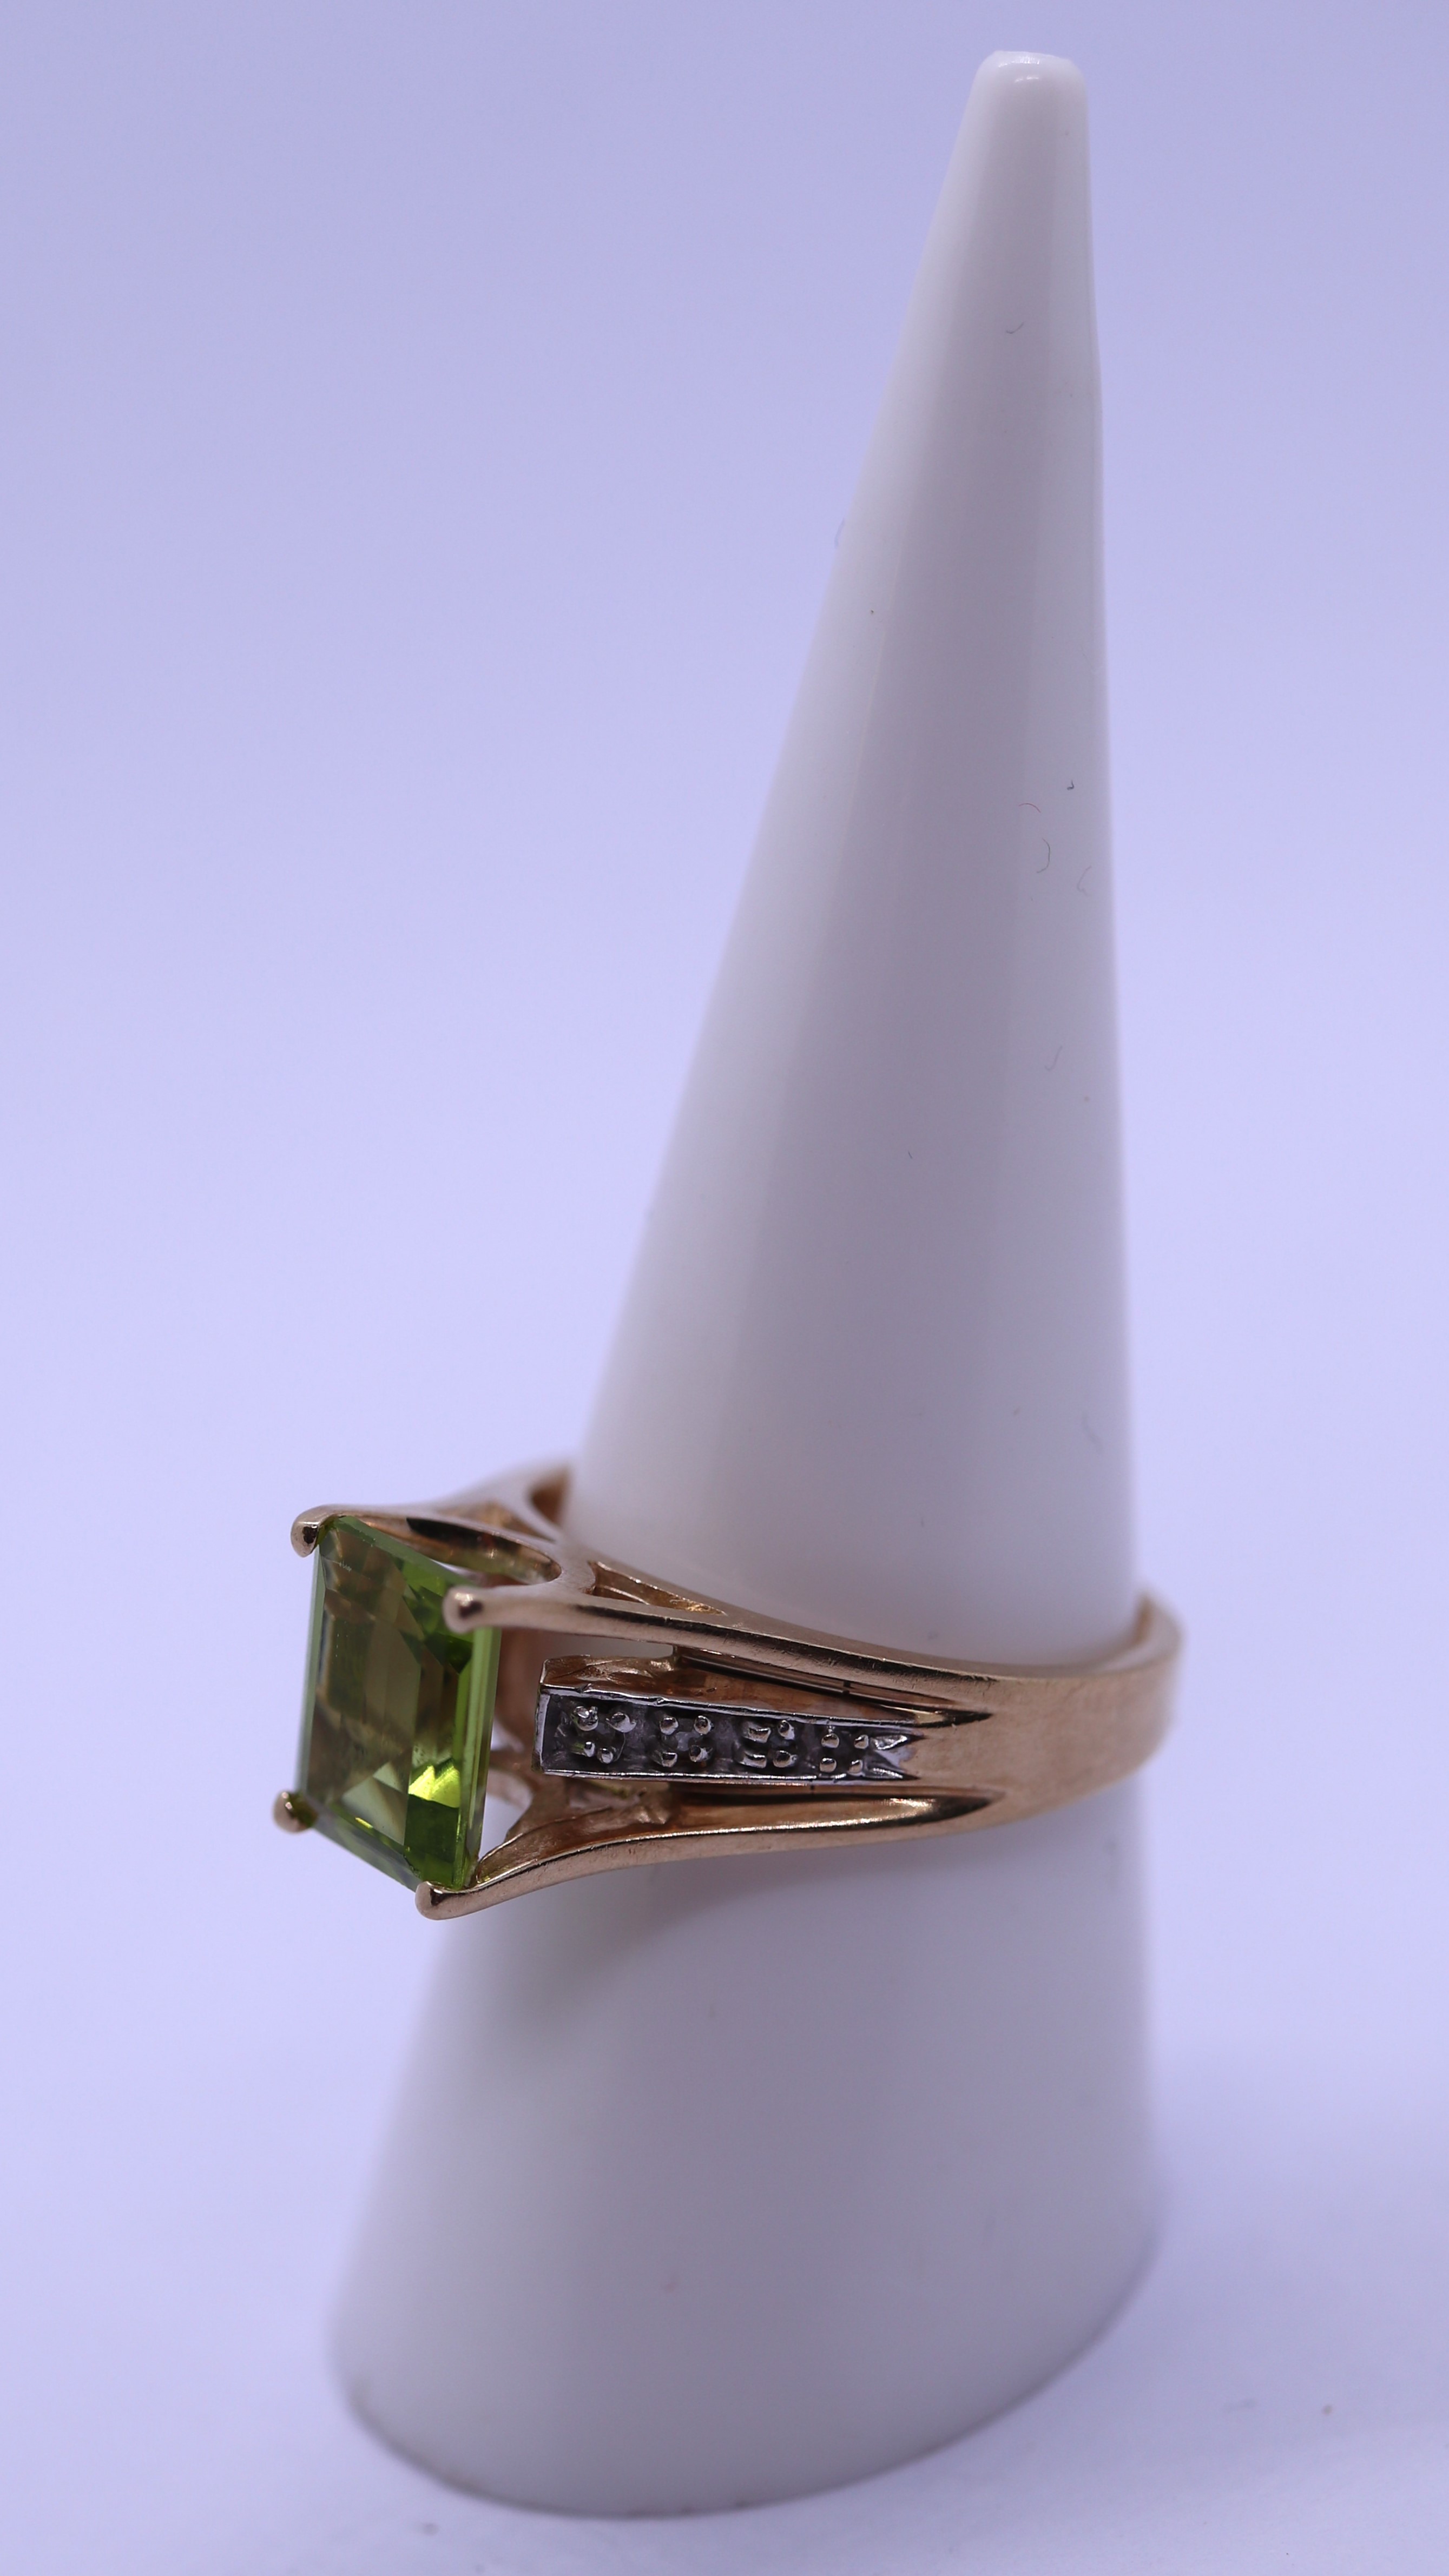 9ct gold peridot & diamond ring - Size O - Image 2 of 3